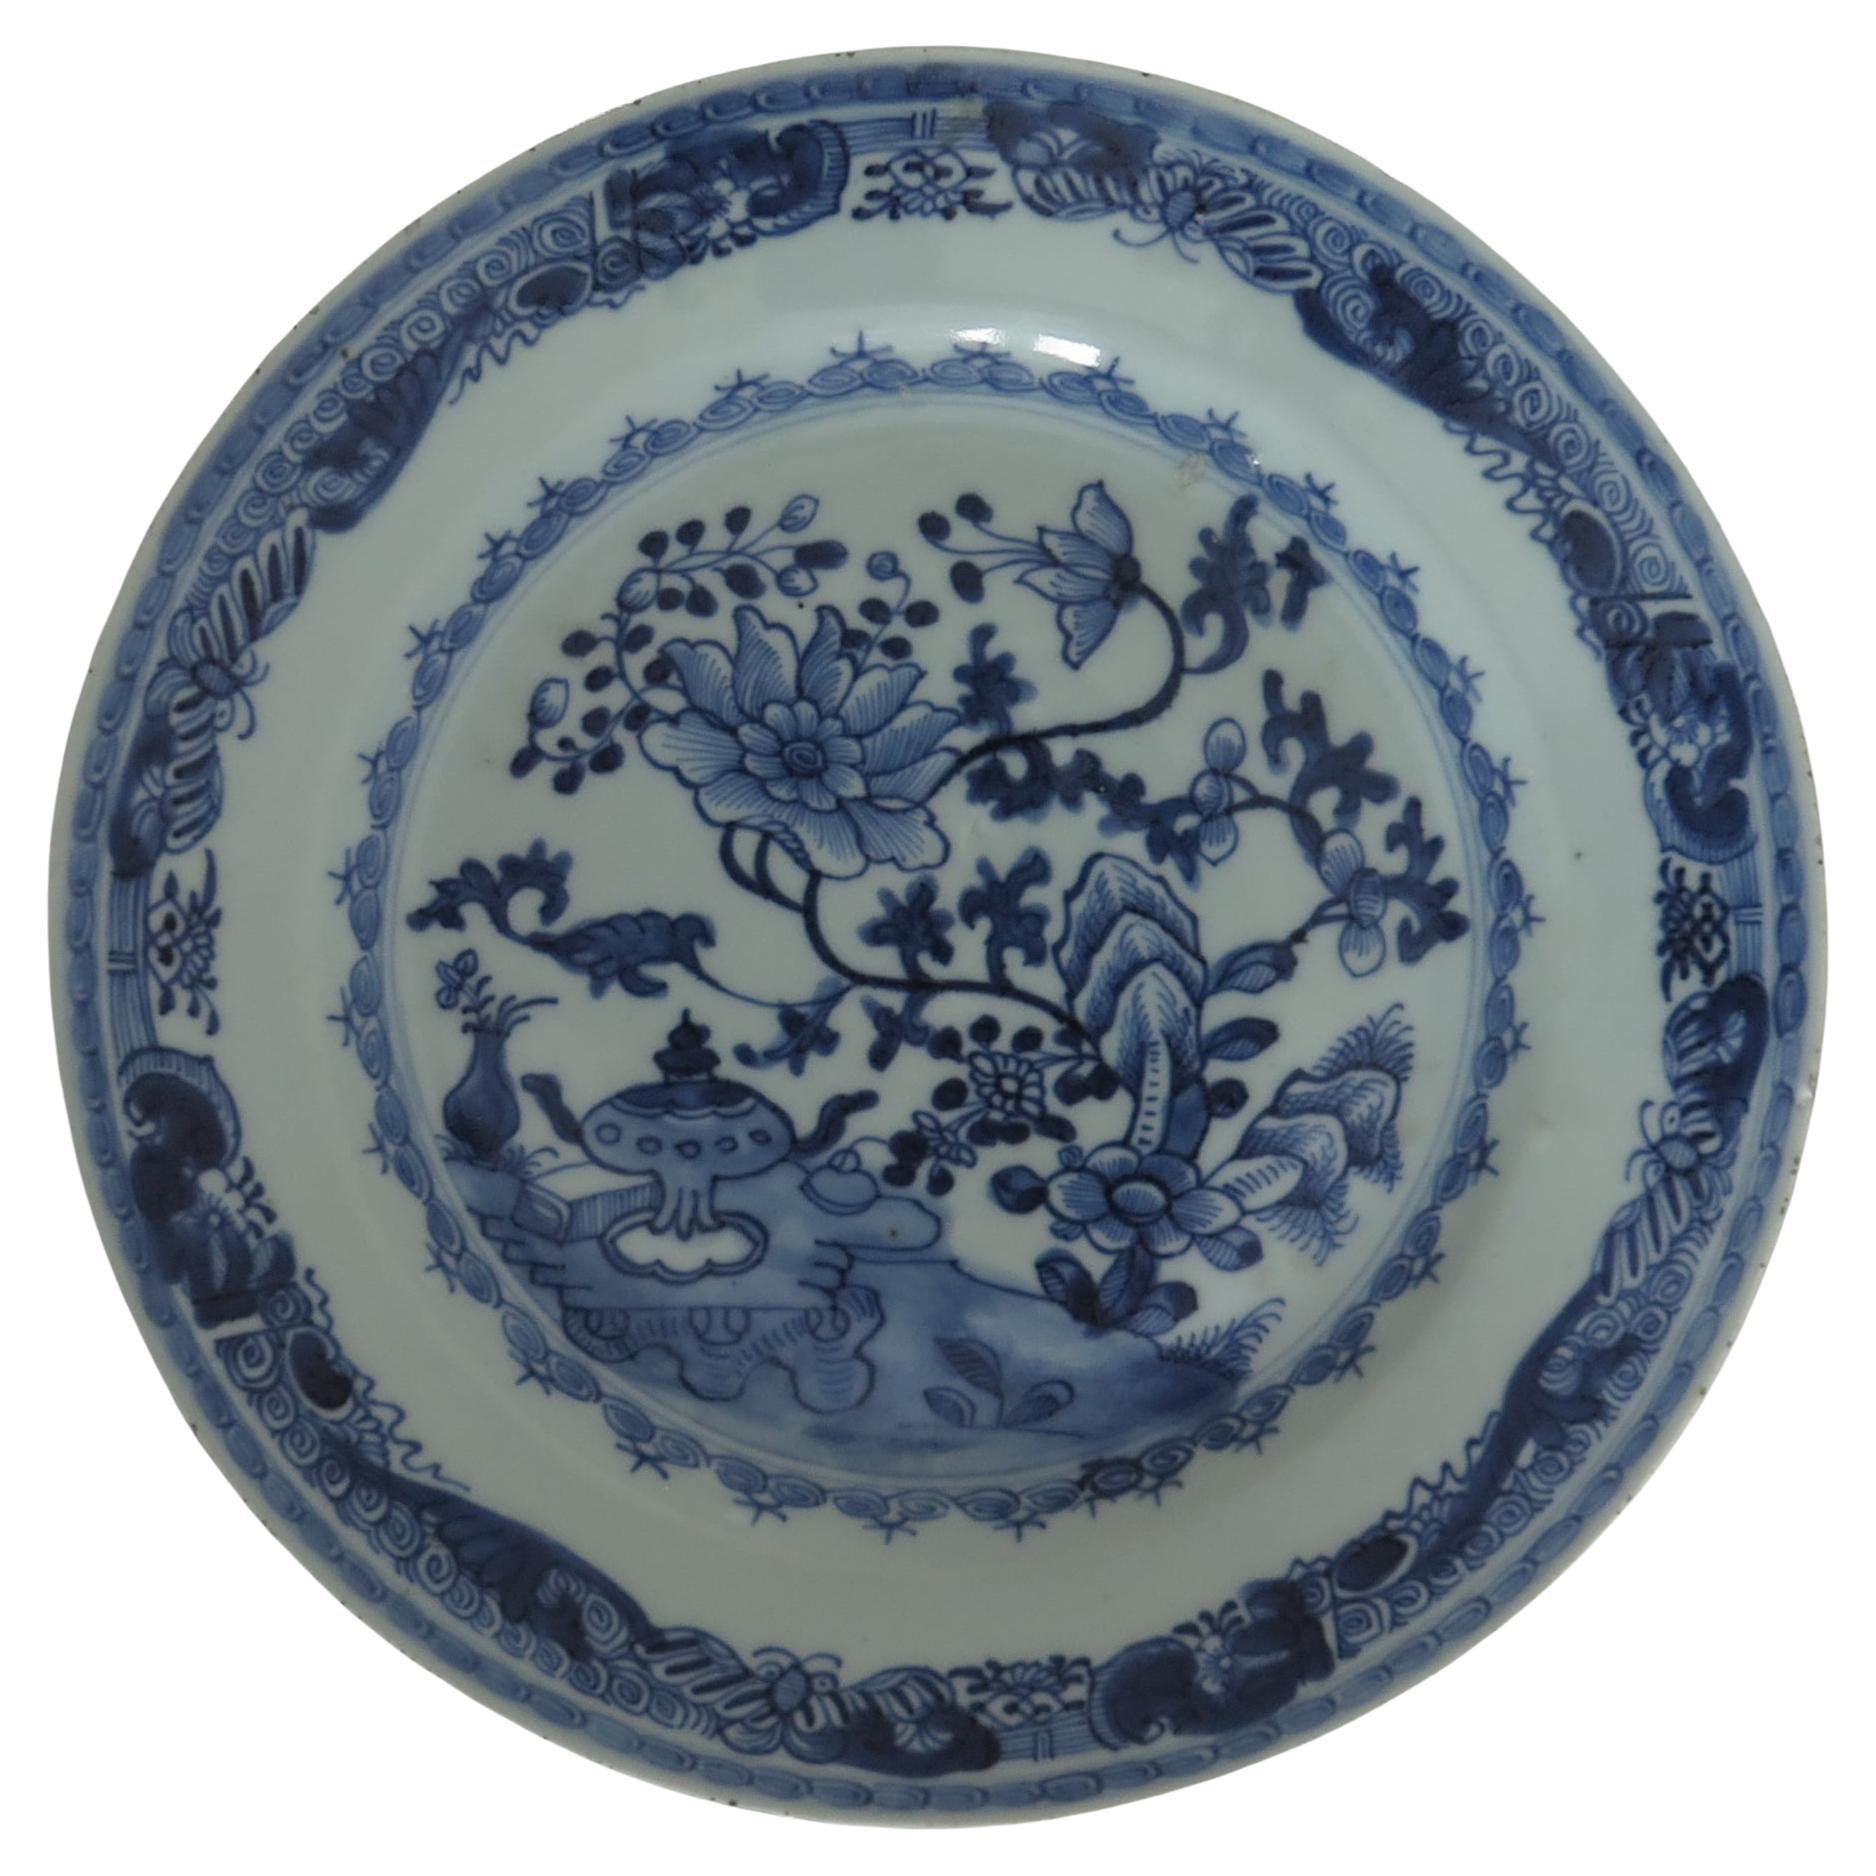 Großer chinesischer blau-weißer Teller aus dem 18. Jahrhundert, Qing Qianlong um 1750